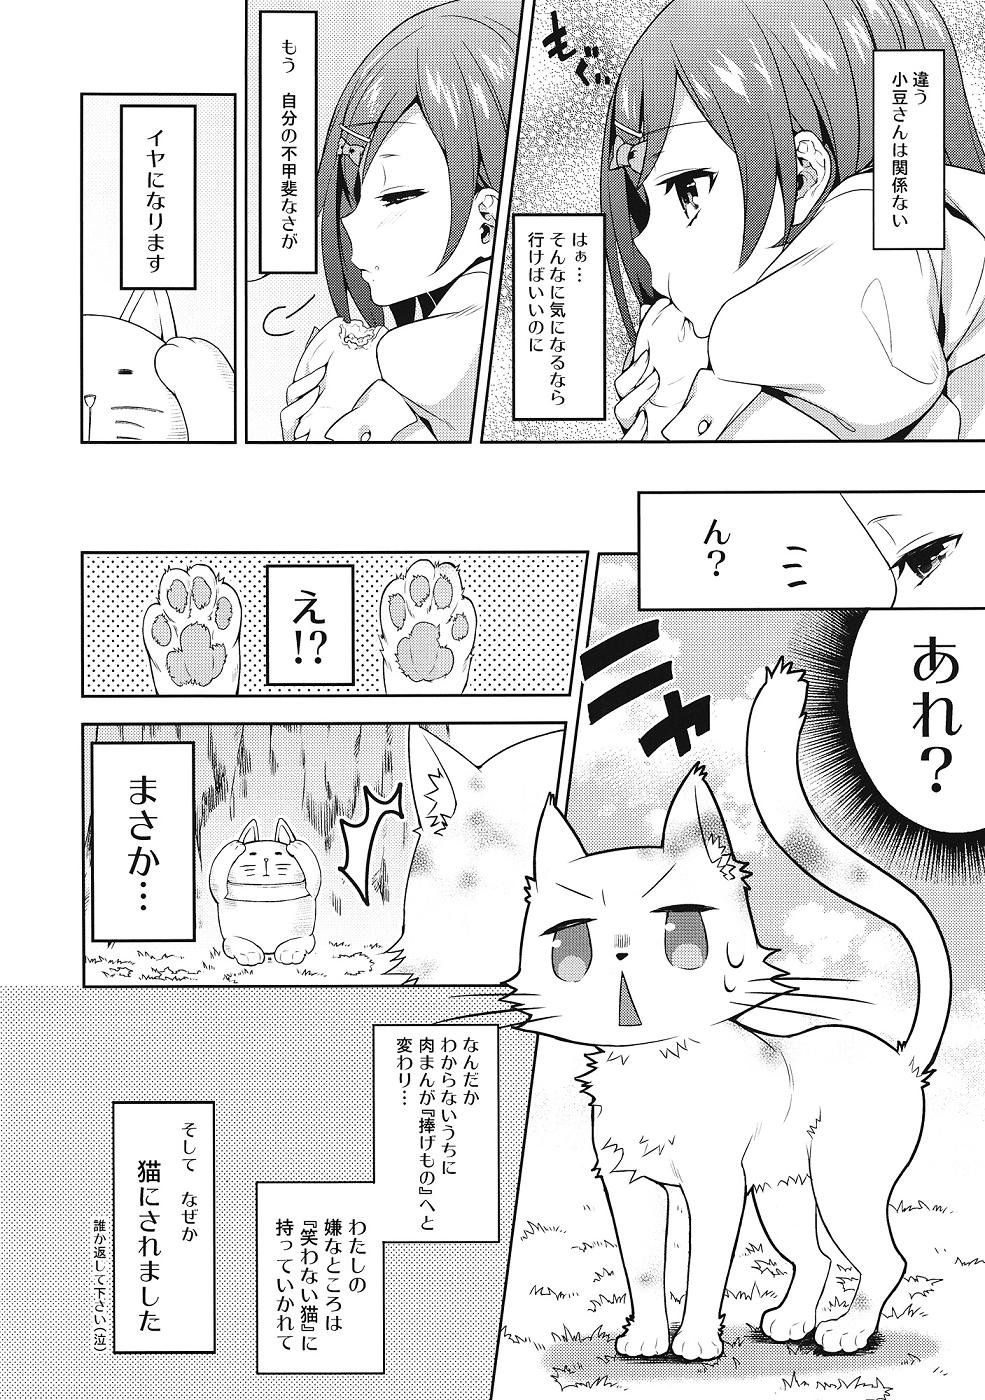 Clothed Hentai Ouji ni Okasareta Neko. - Hentai ouji to warawanai neko Gay Outdoors - Page 3